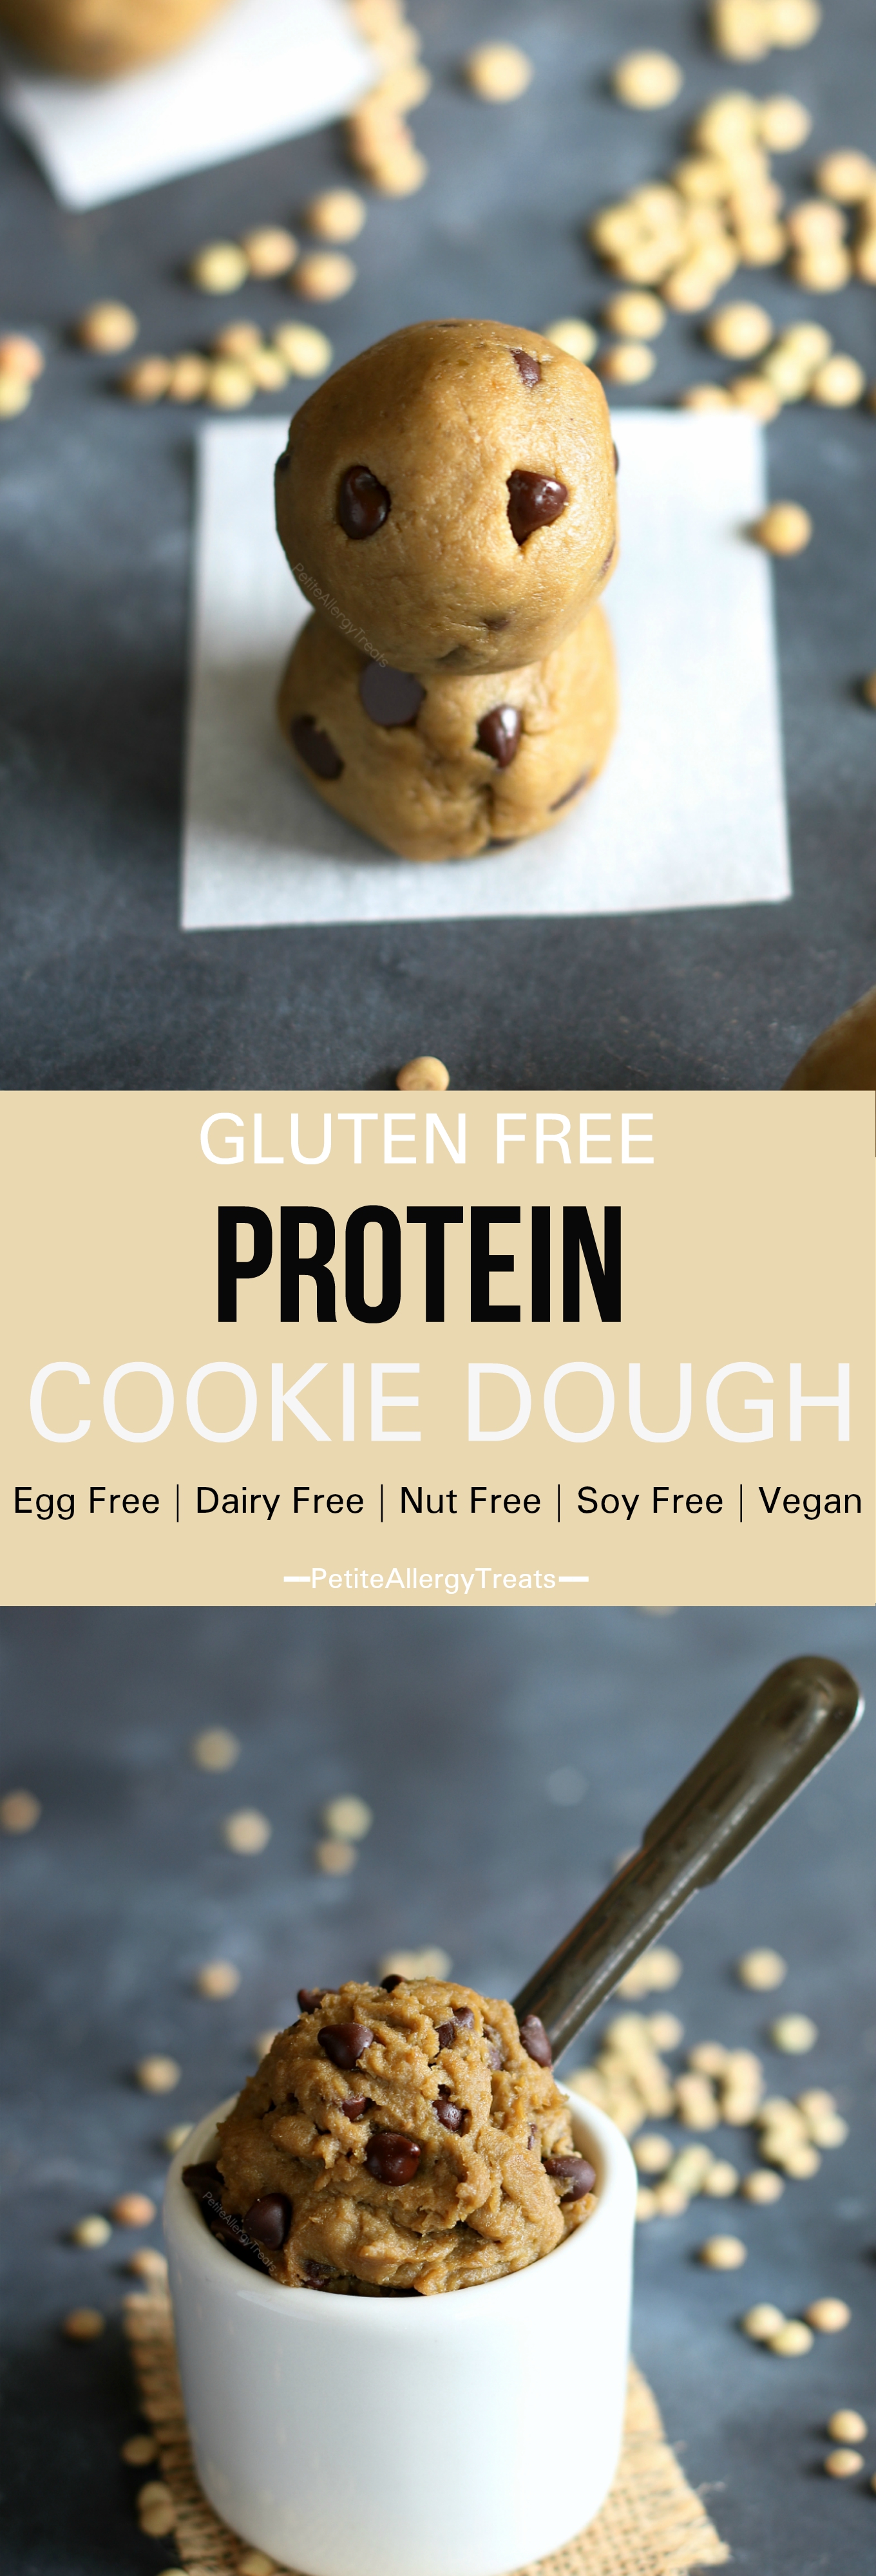 Healthy Flourless Protein Cookie Dough Bites (gluten free dairy free vegan) Recipe- Delicious flourless healthy protein packed cookie dough. Food allergy friendly. #glutenfree, #dairyfree, #vegan